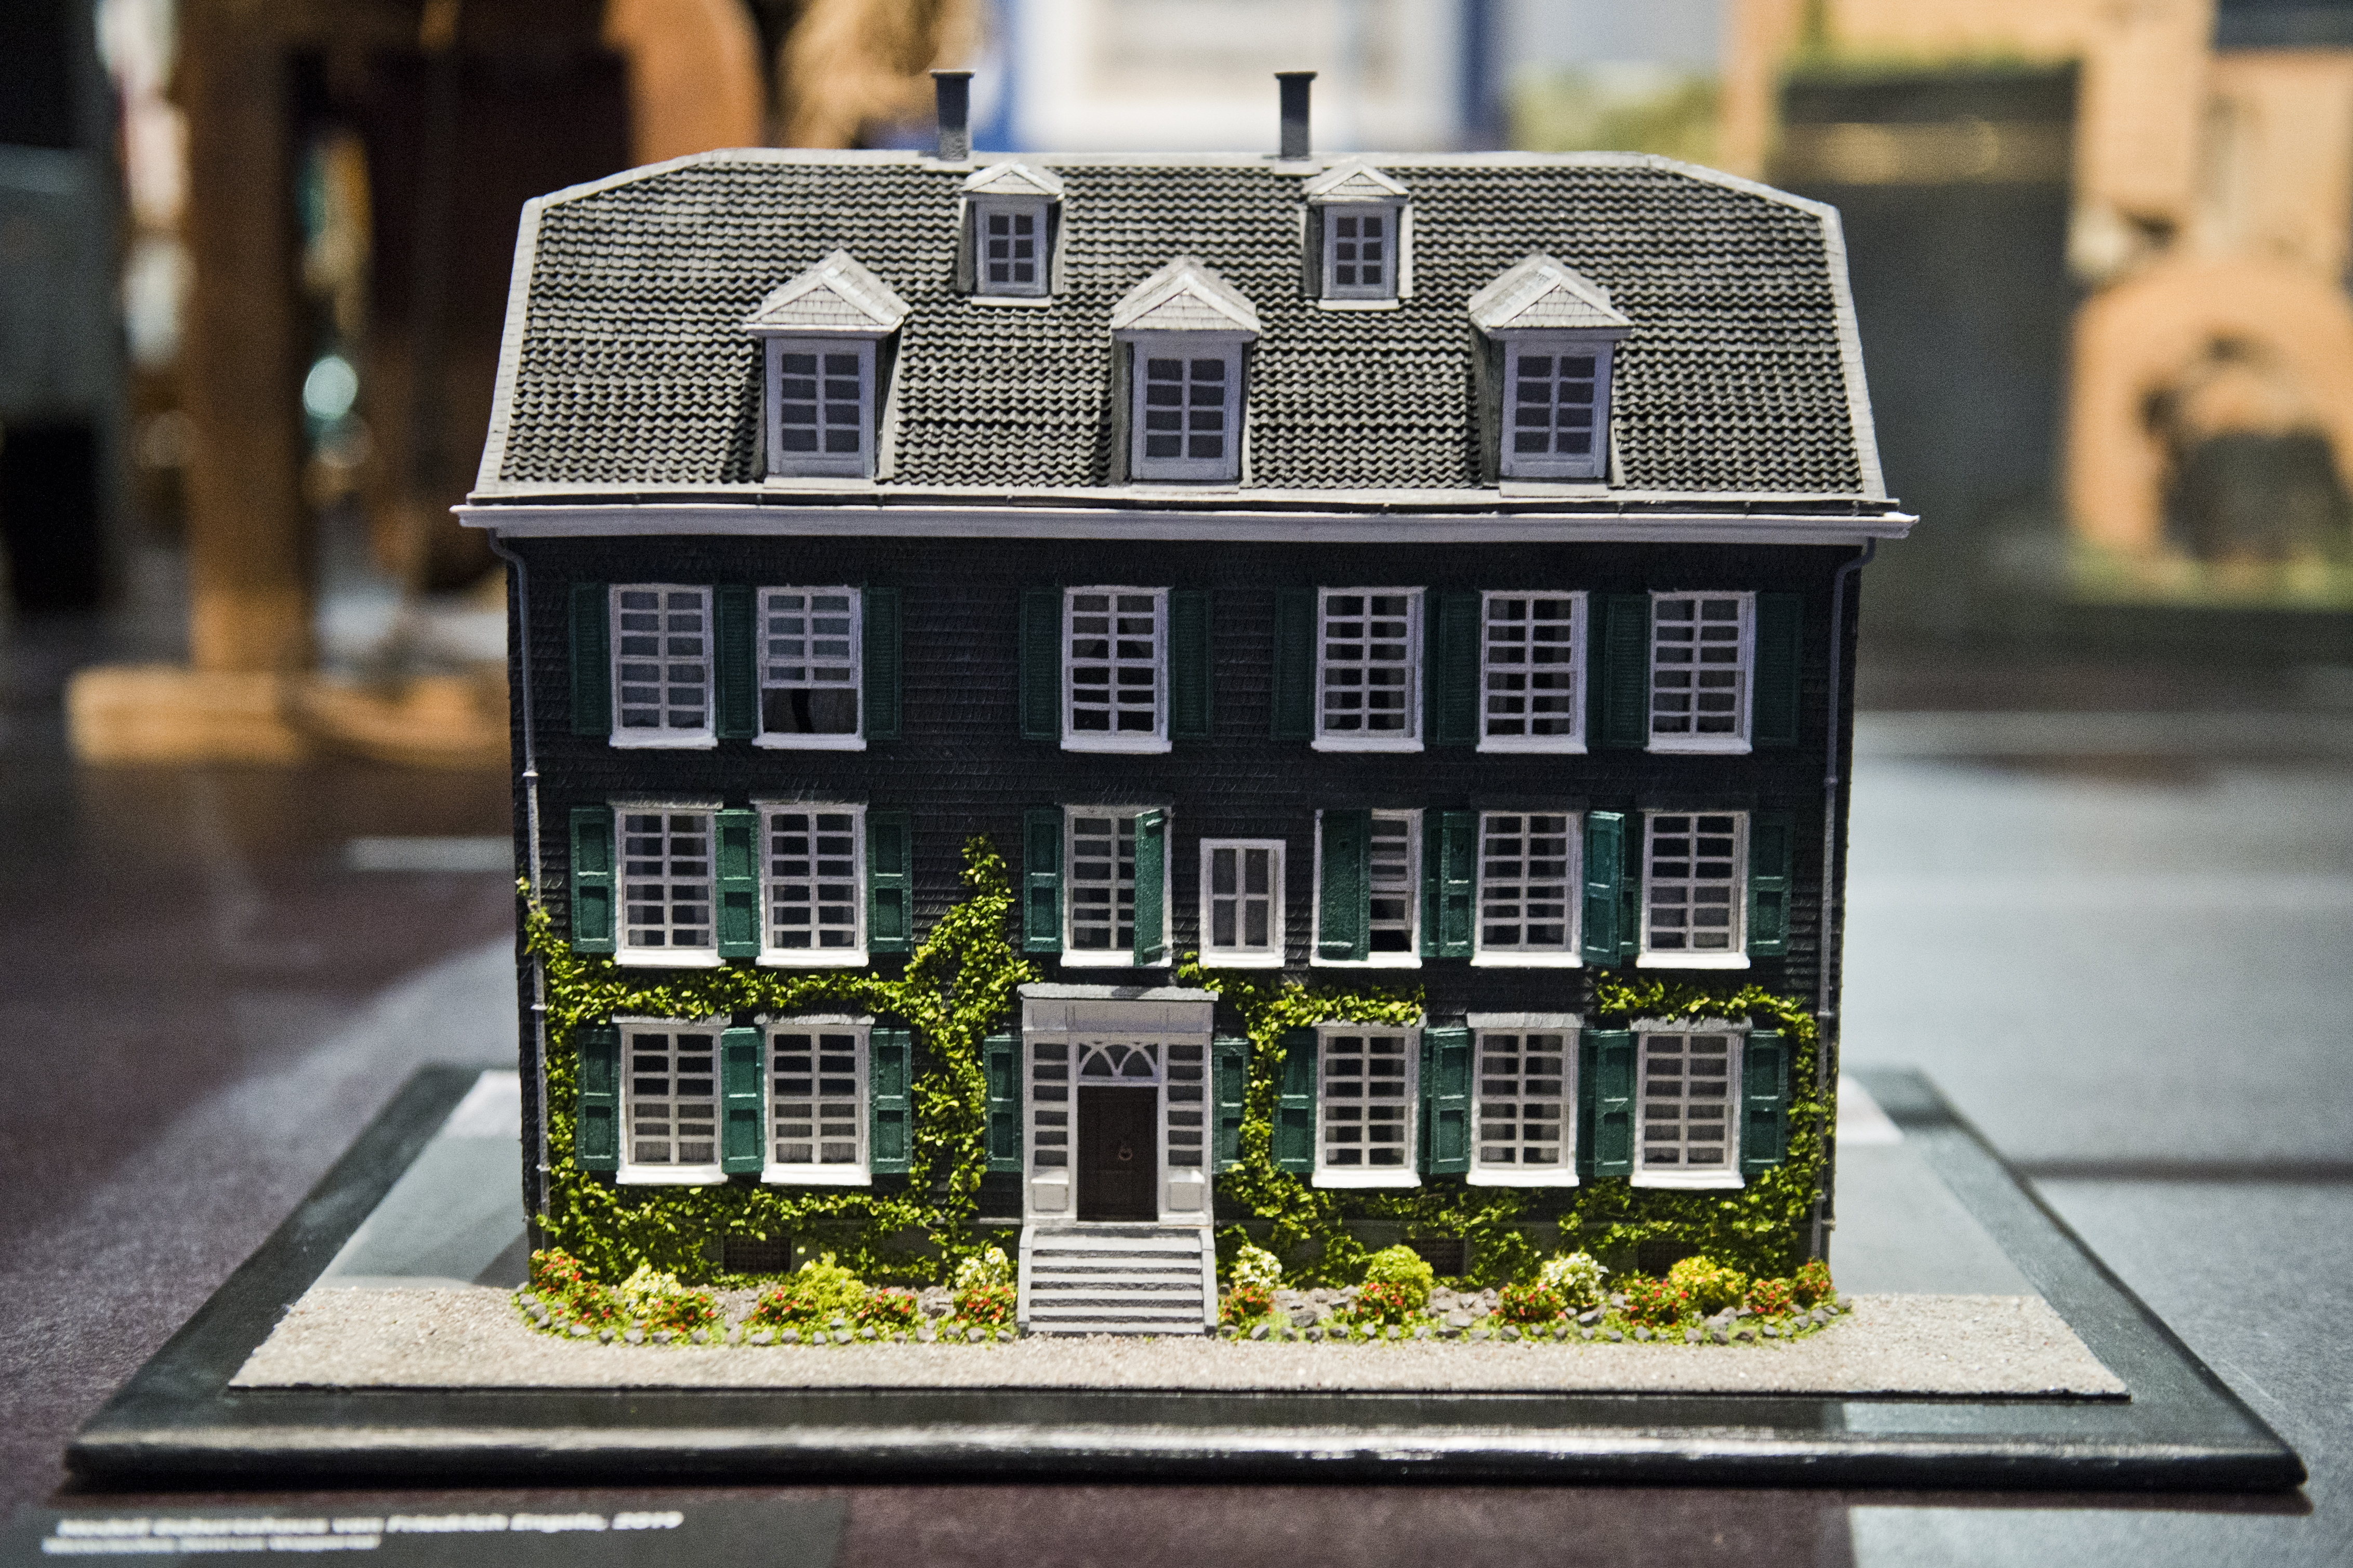 Ein Miniaturmodell des Geburtshauses von Friedrich Engels im heutigen Wuppertal.